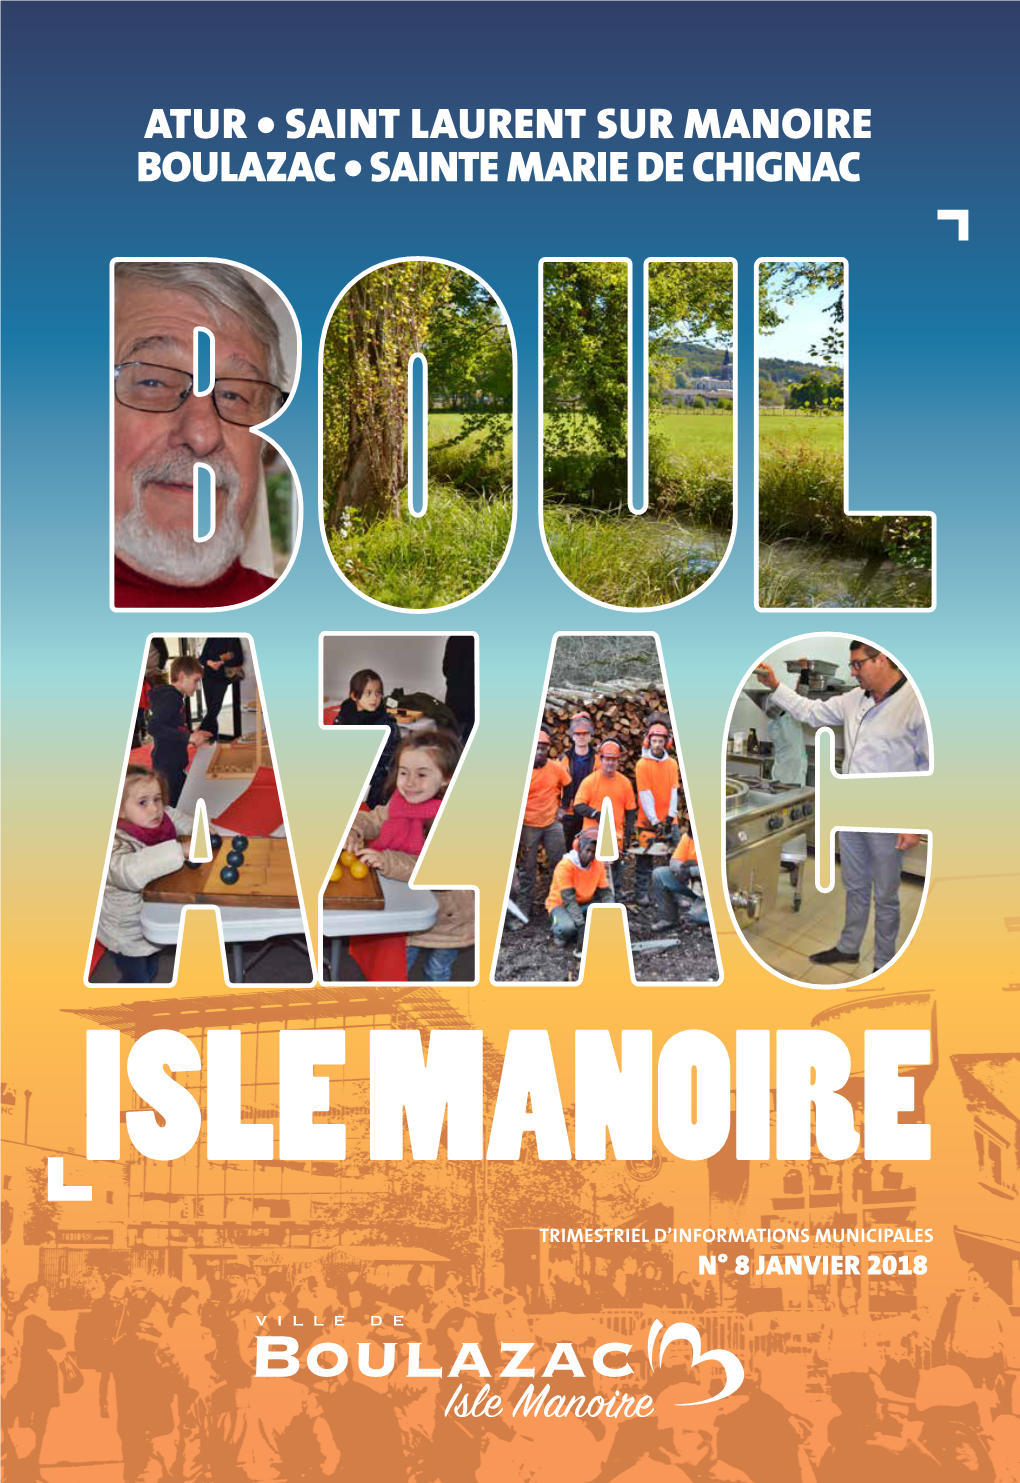 Atur • Saint Laurent Sur Manoire Boulazac • Sainte Marie De Chignac